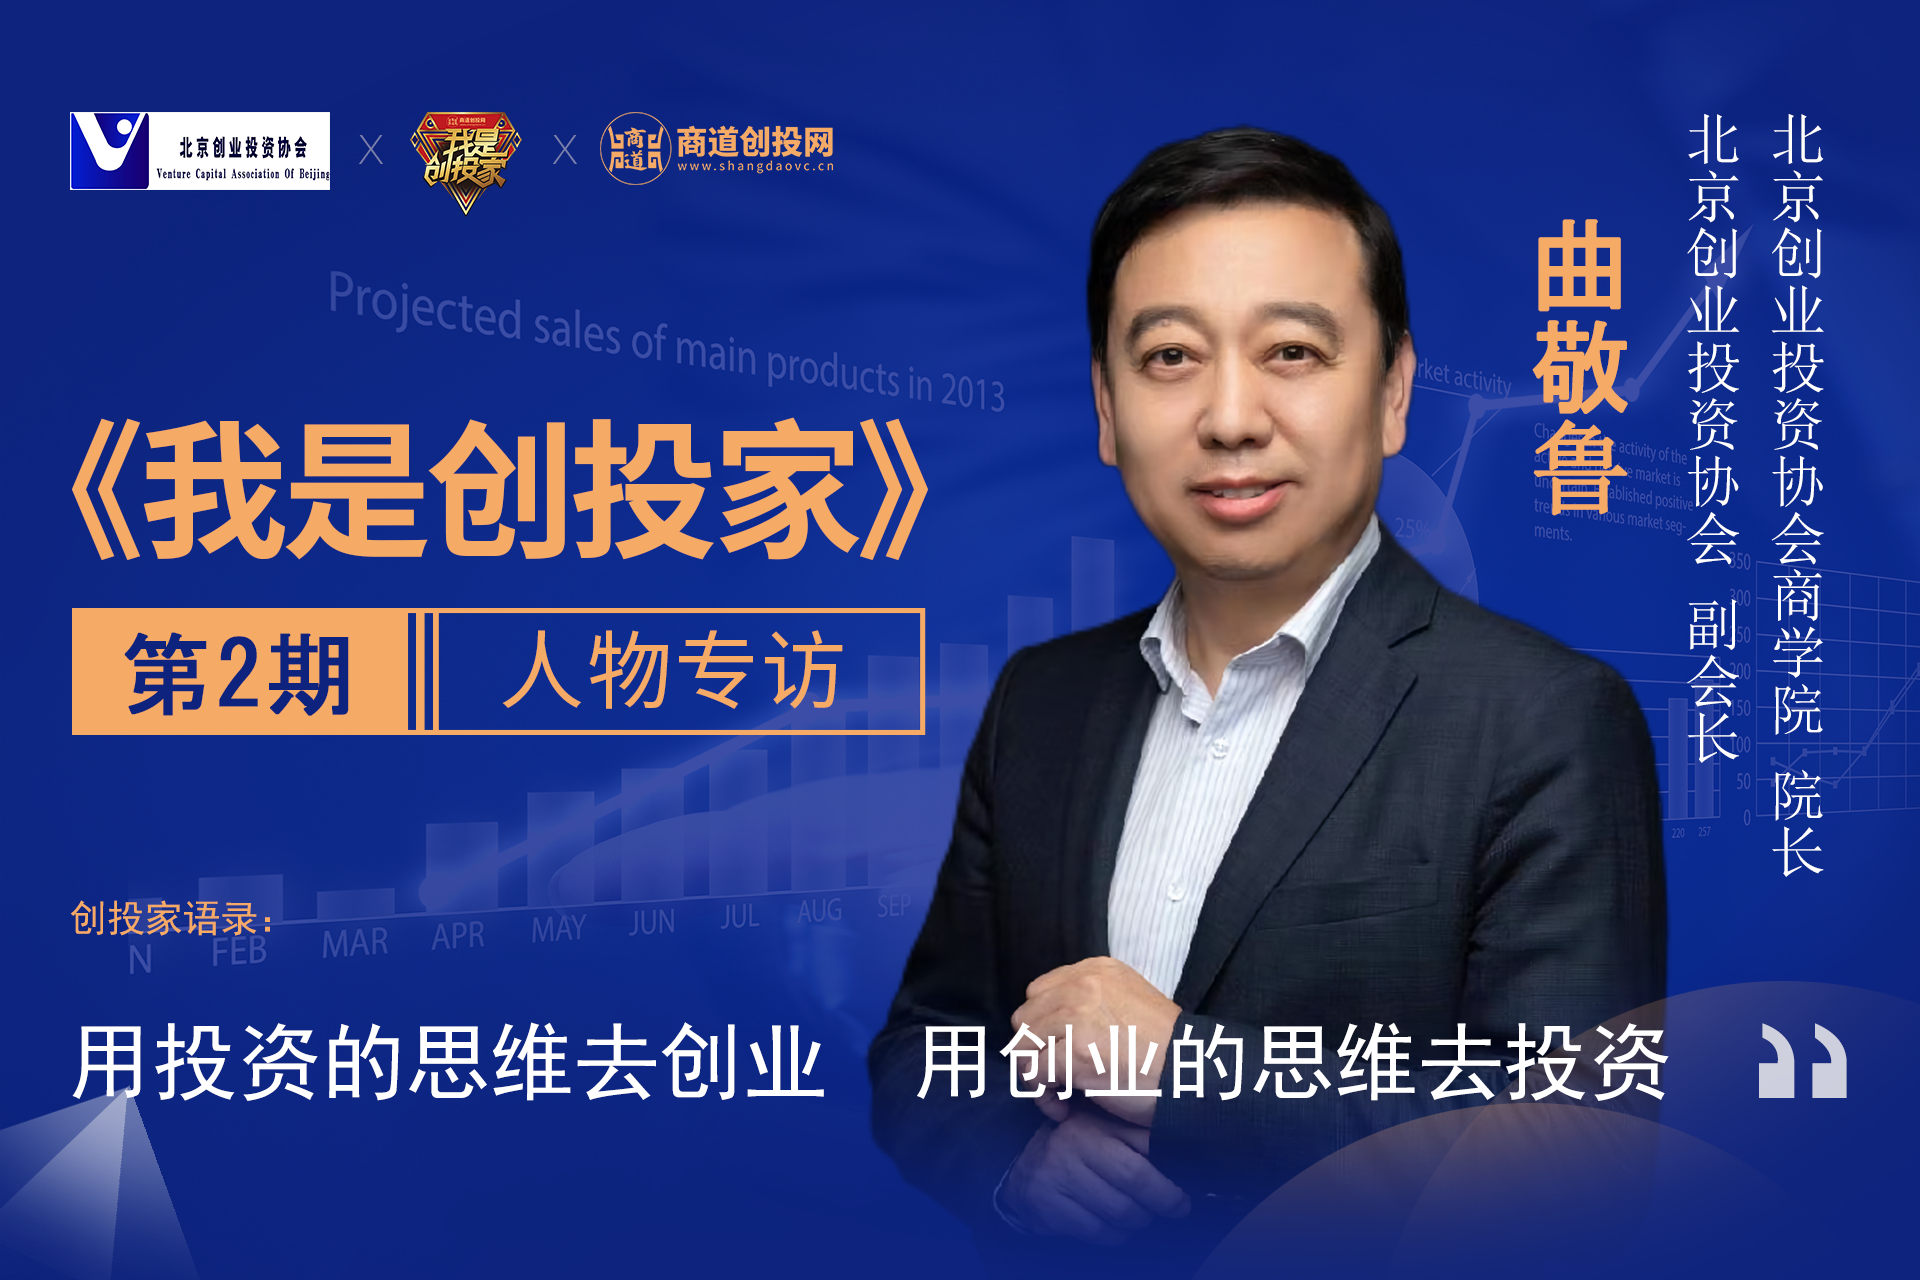 第2期 | 北京创投协会副会长曲敬鲁：用投资的思维去创业 用创业的思维去投资